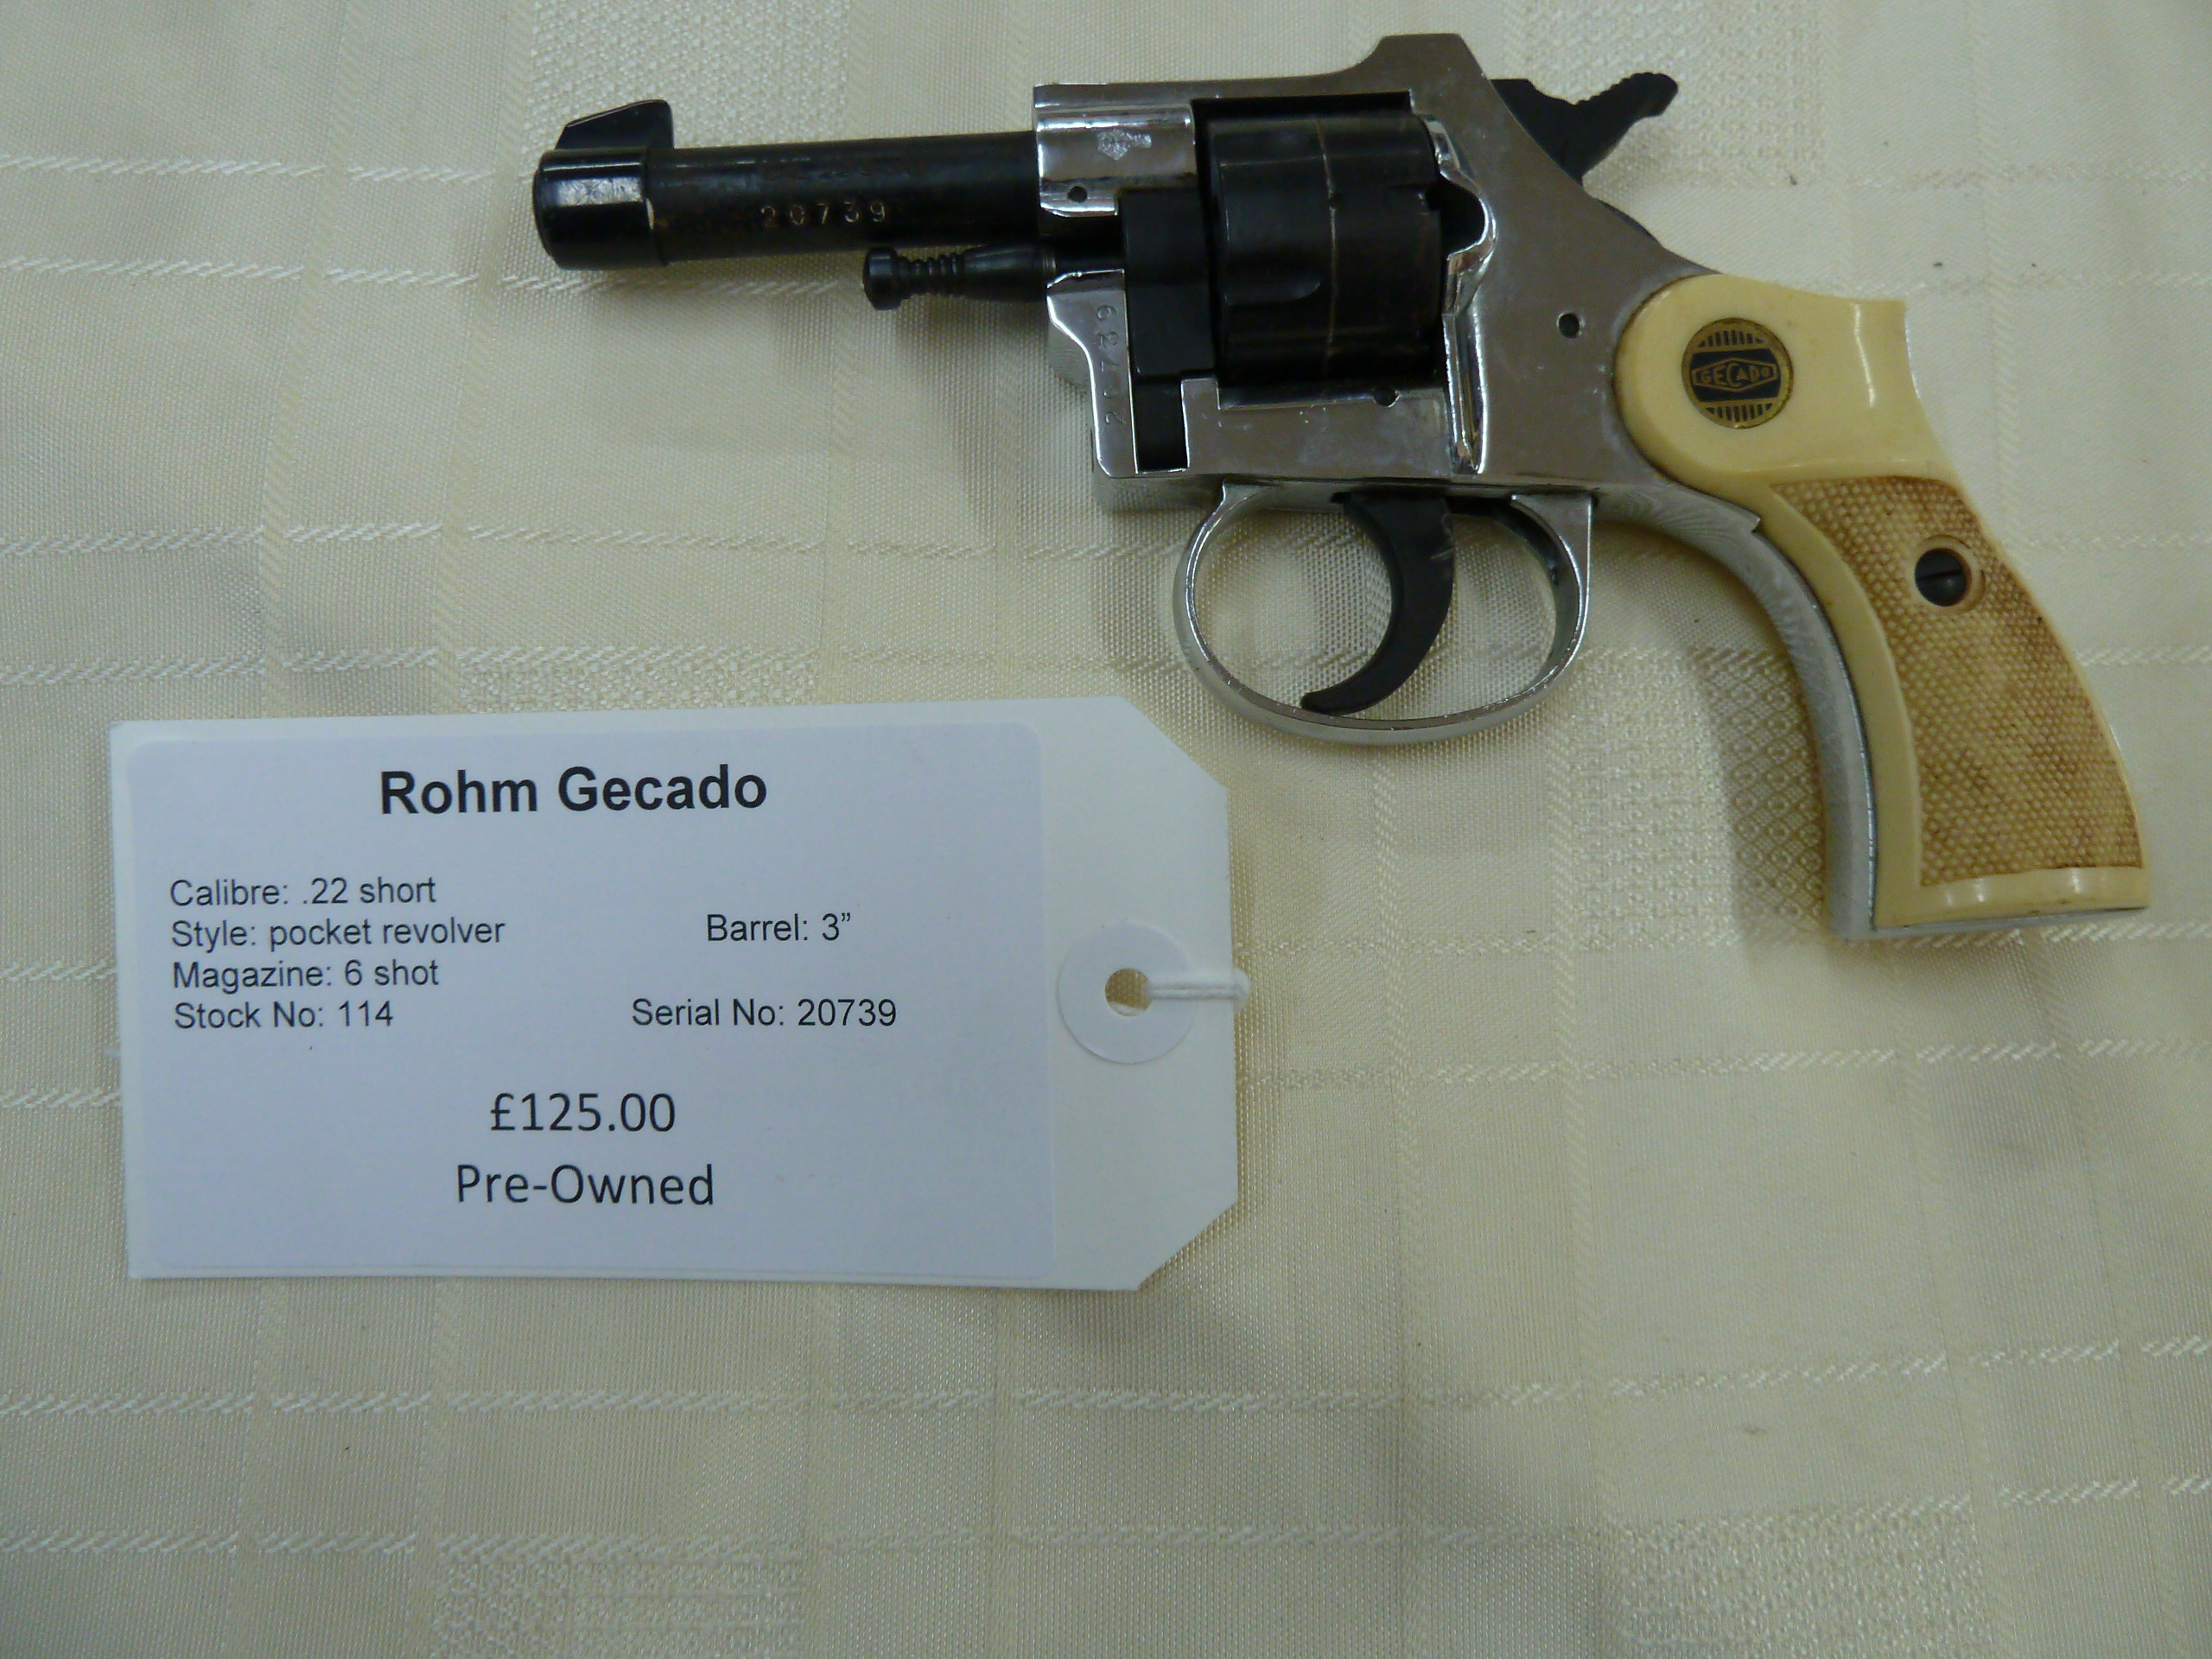 Rohm Gecado .22 short pocket revolver